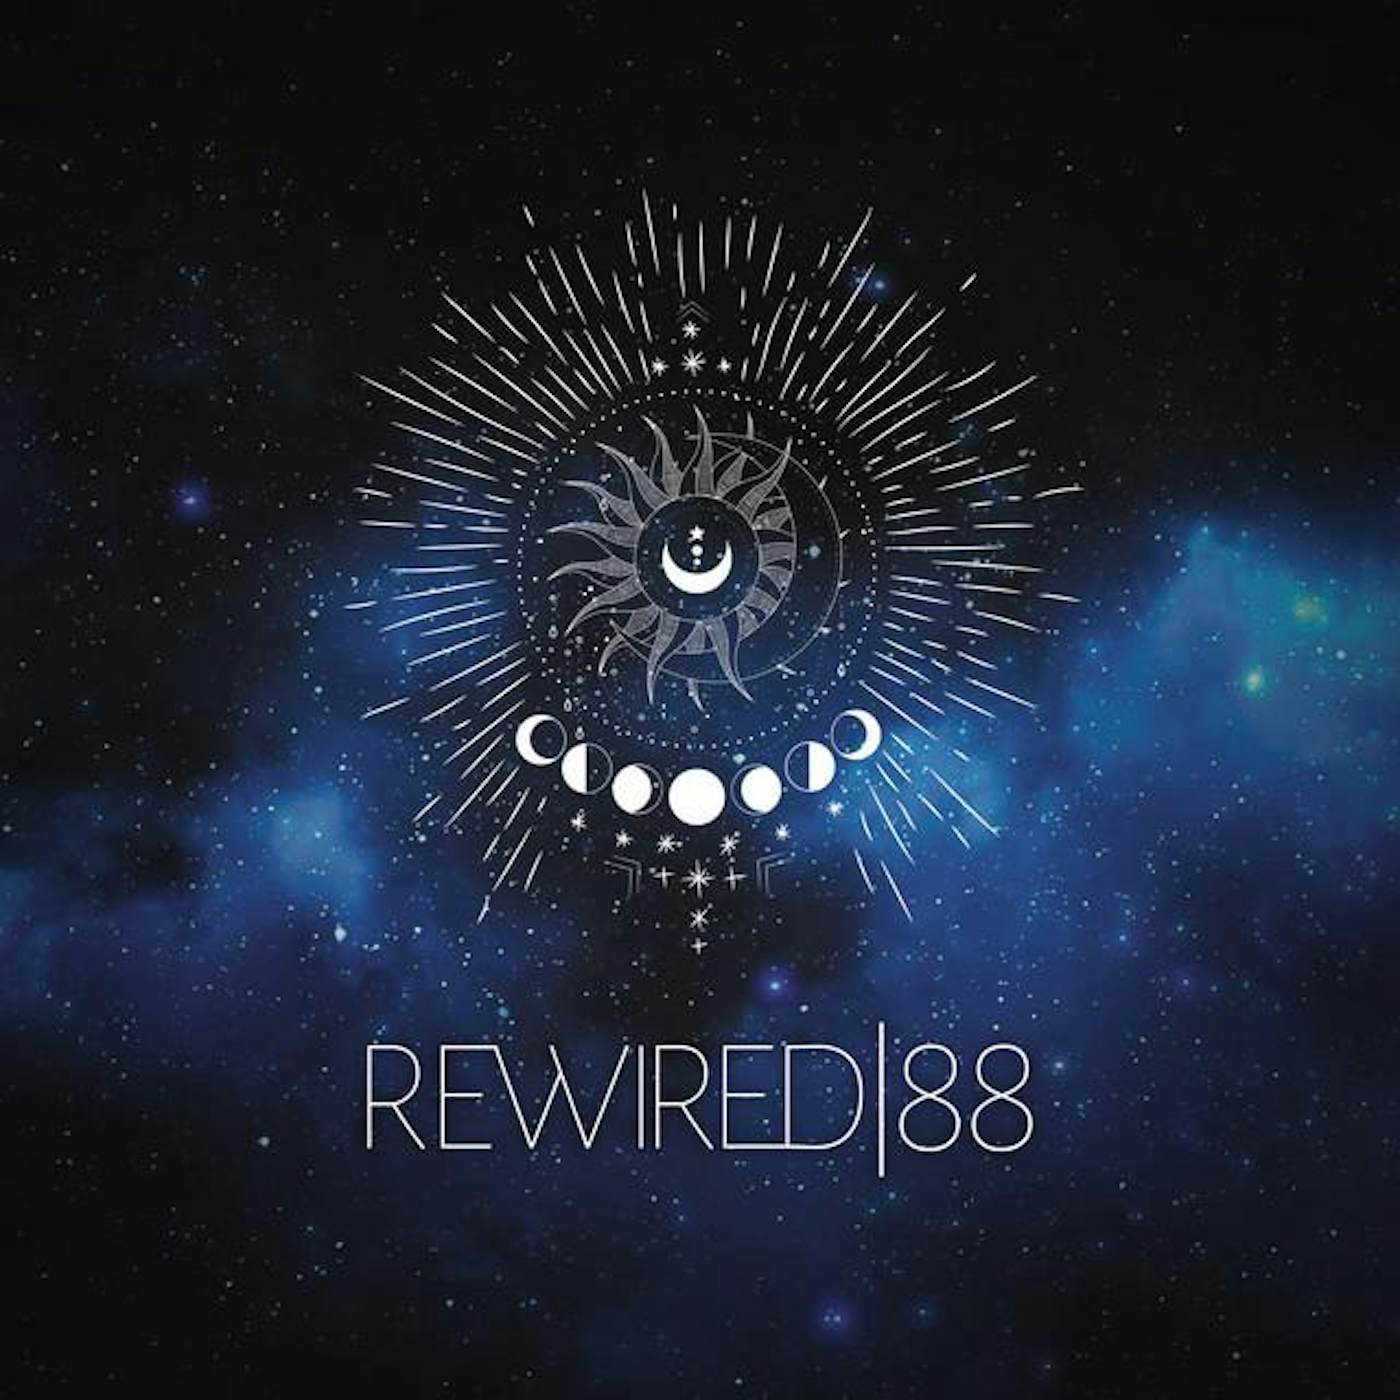 Rewired88